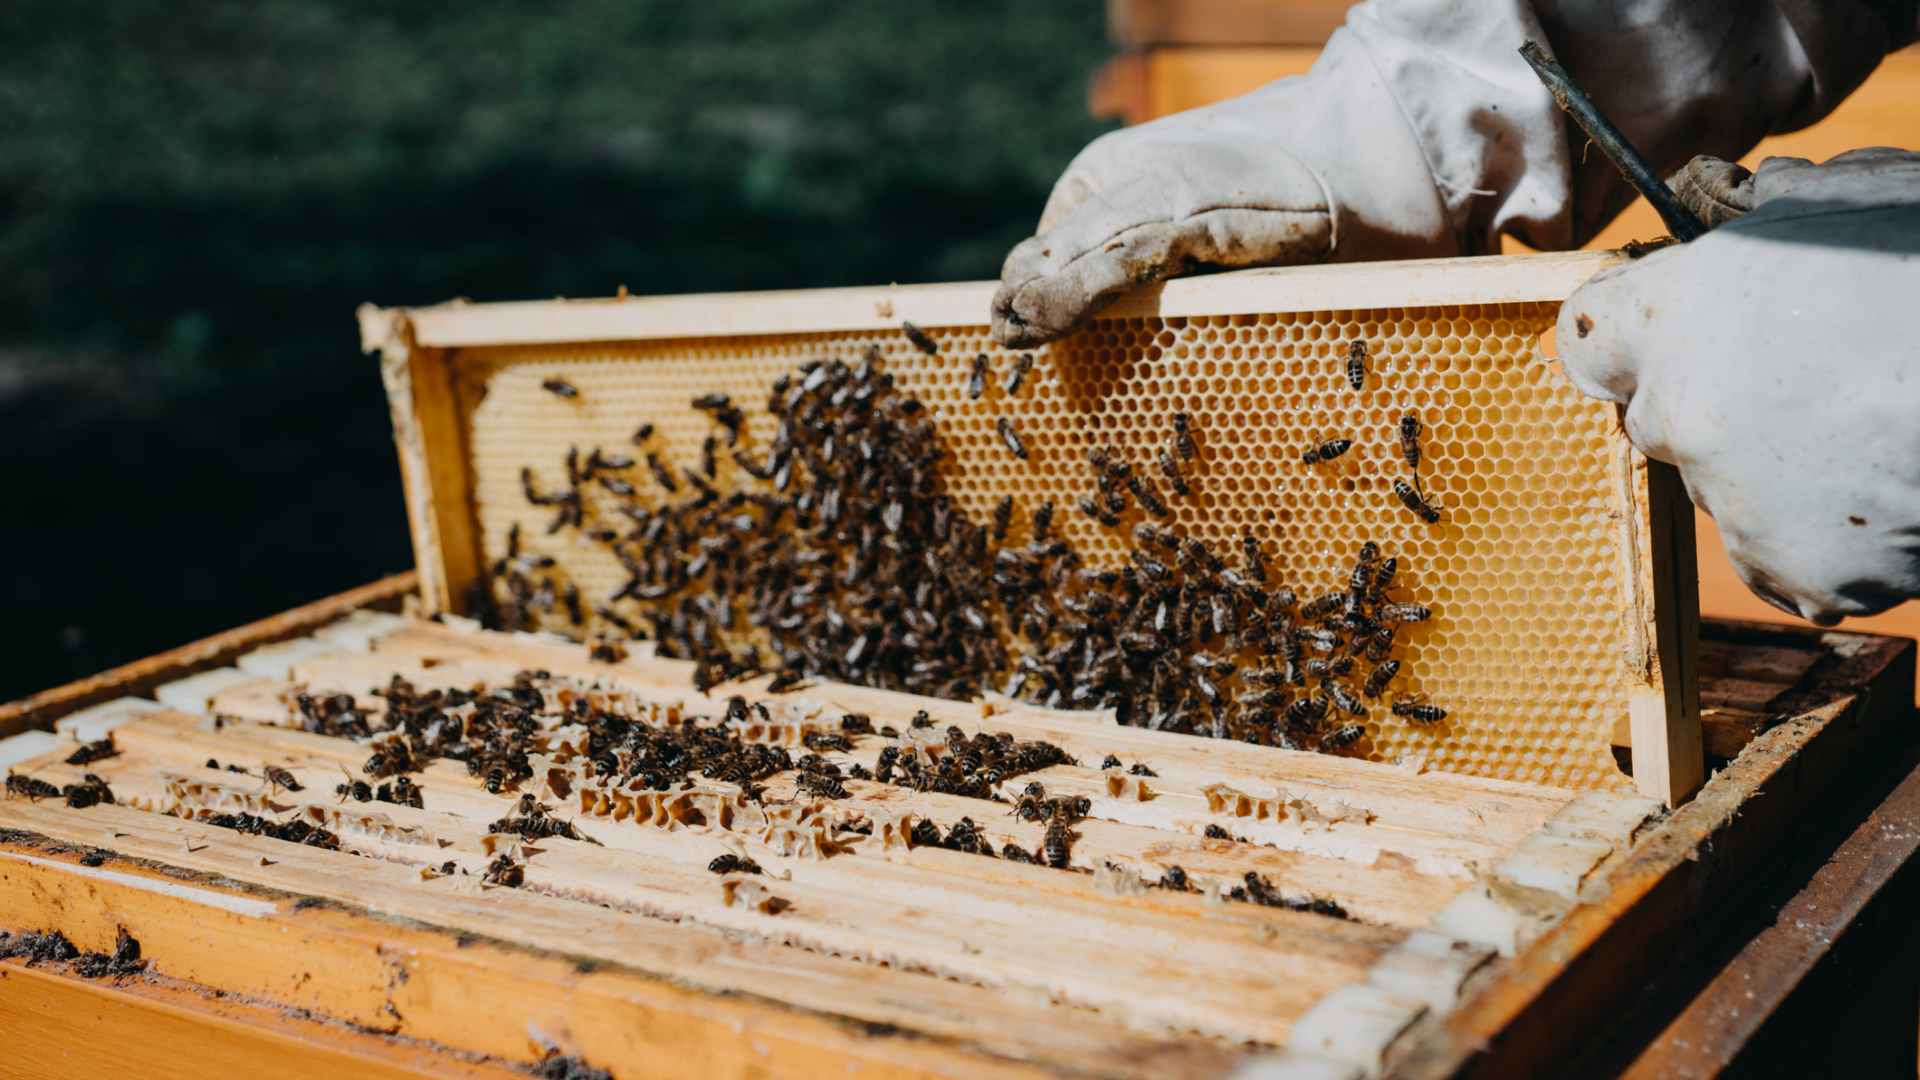 Imagem destaque do blog post do Sebrae RS sobre tecnologias agro. Nele temos a imagem de um apicultor mexendo em uma caixa de abelhas.